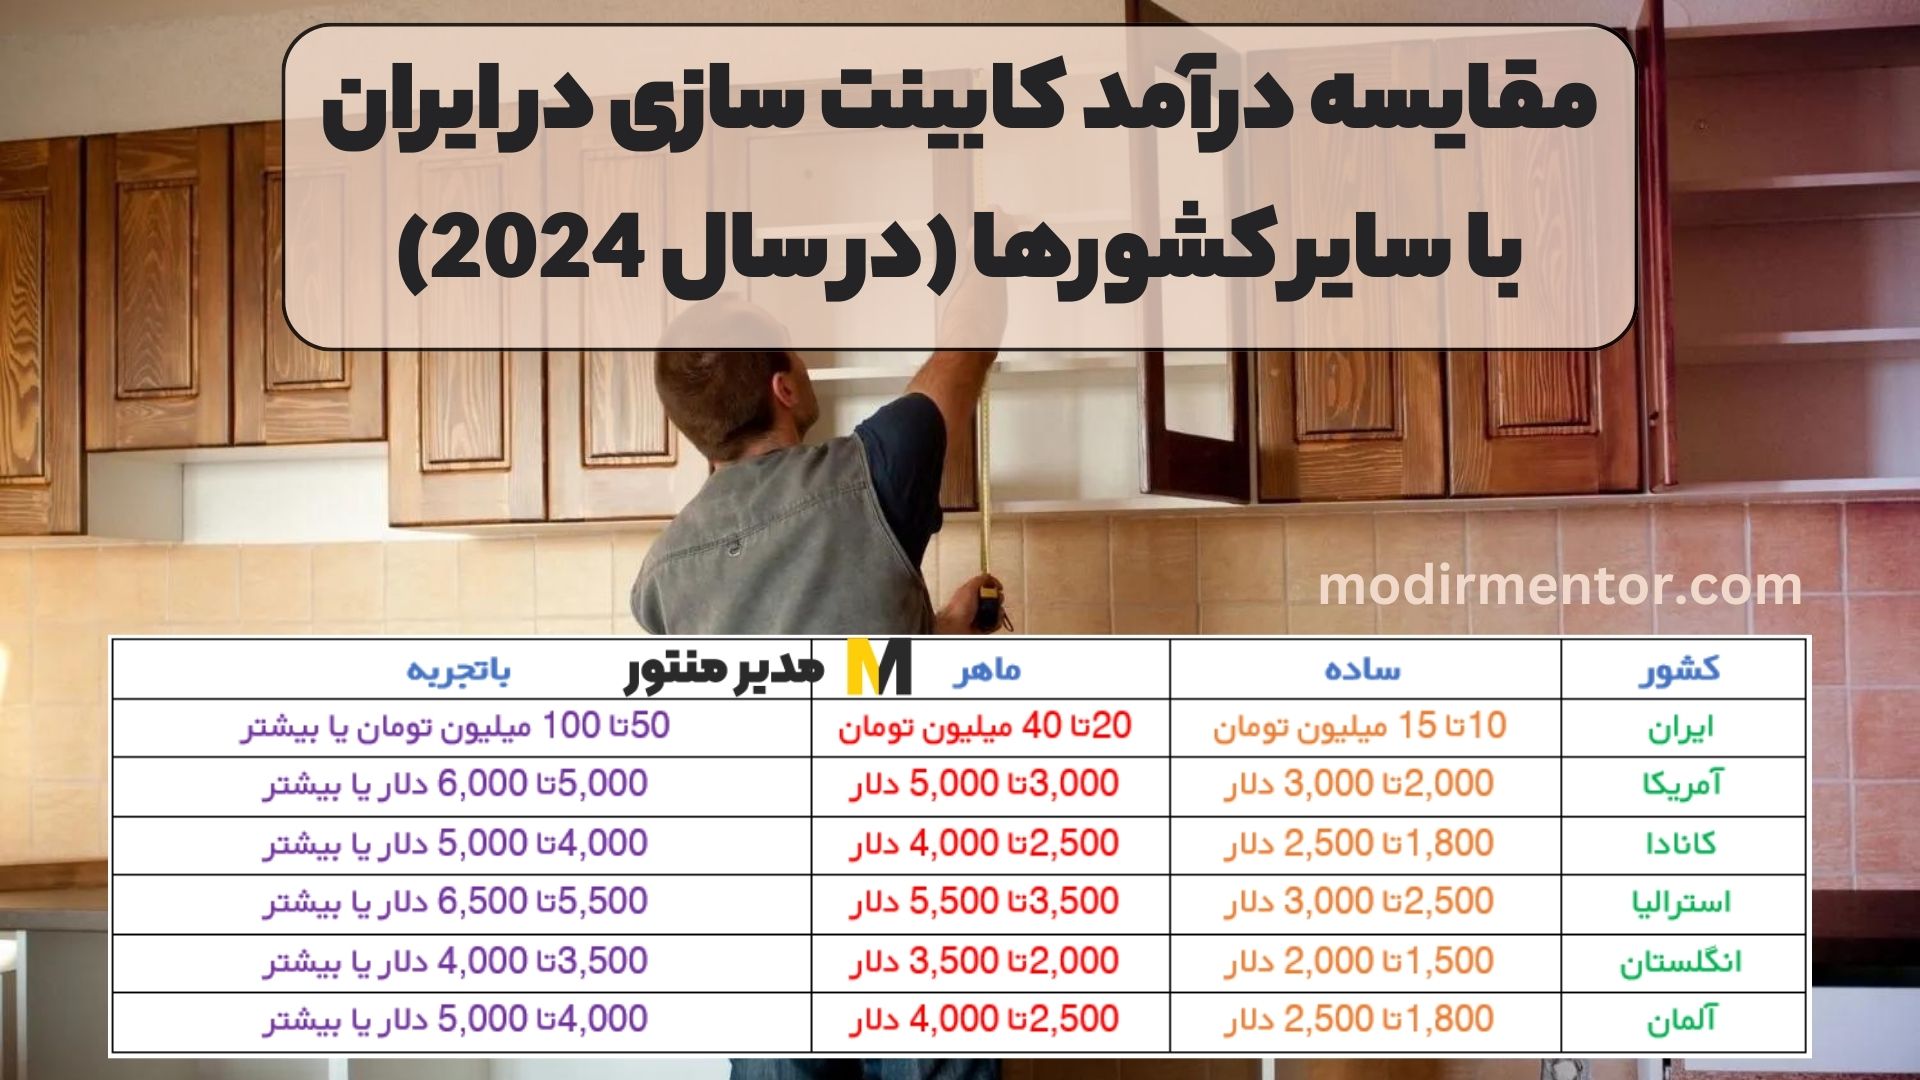 مقایسه درآمد کابینت سازی در ایران با سایر کشورها (در سال 2024)